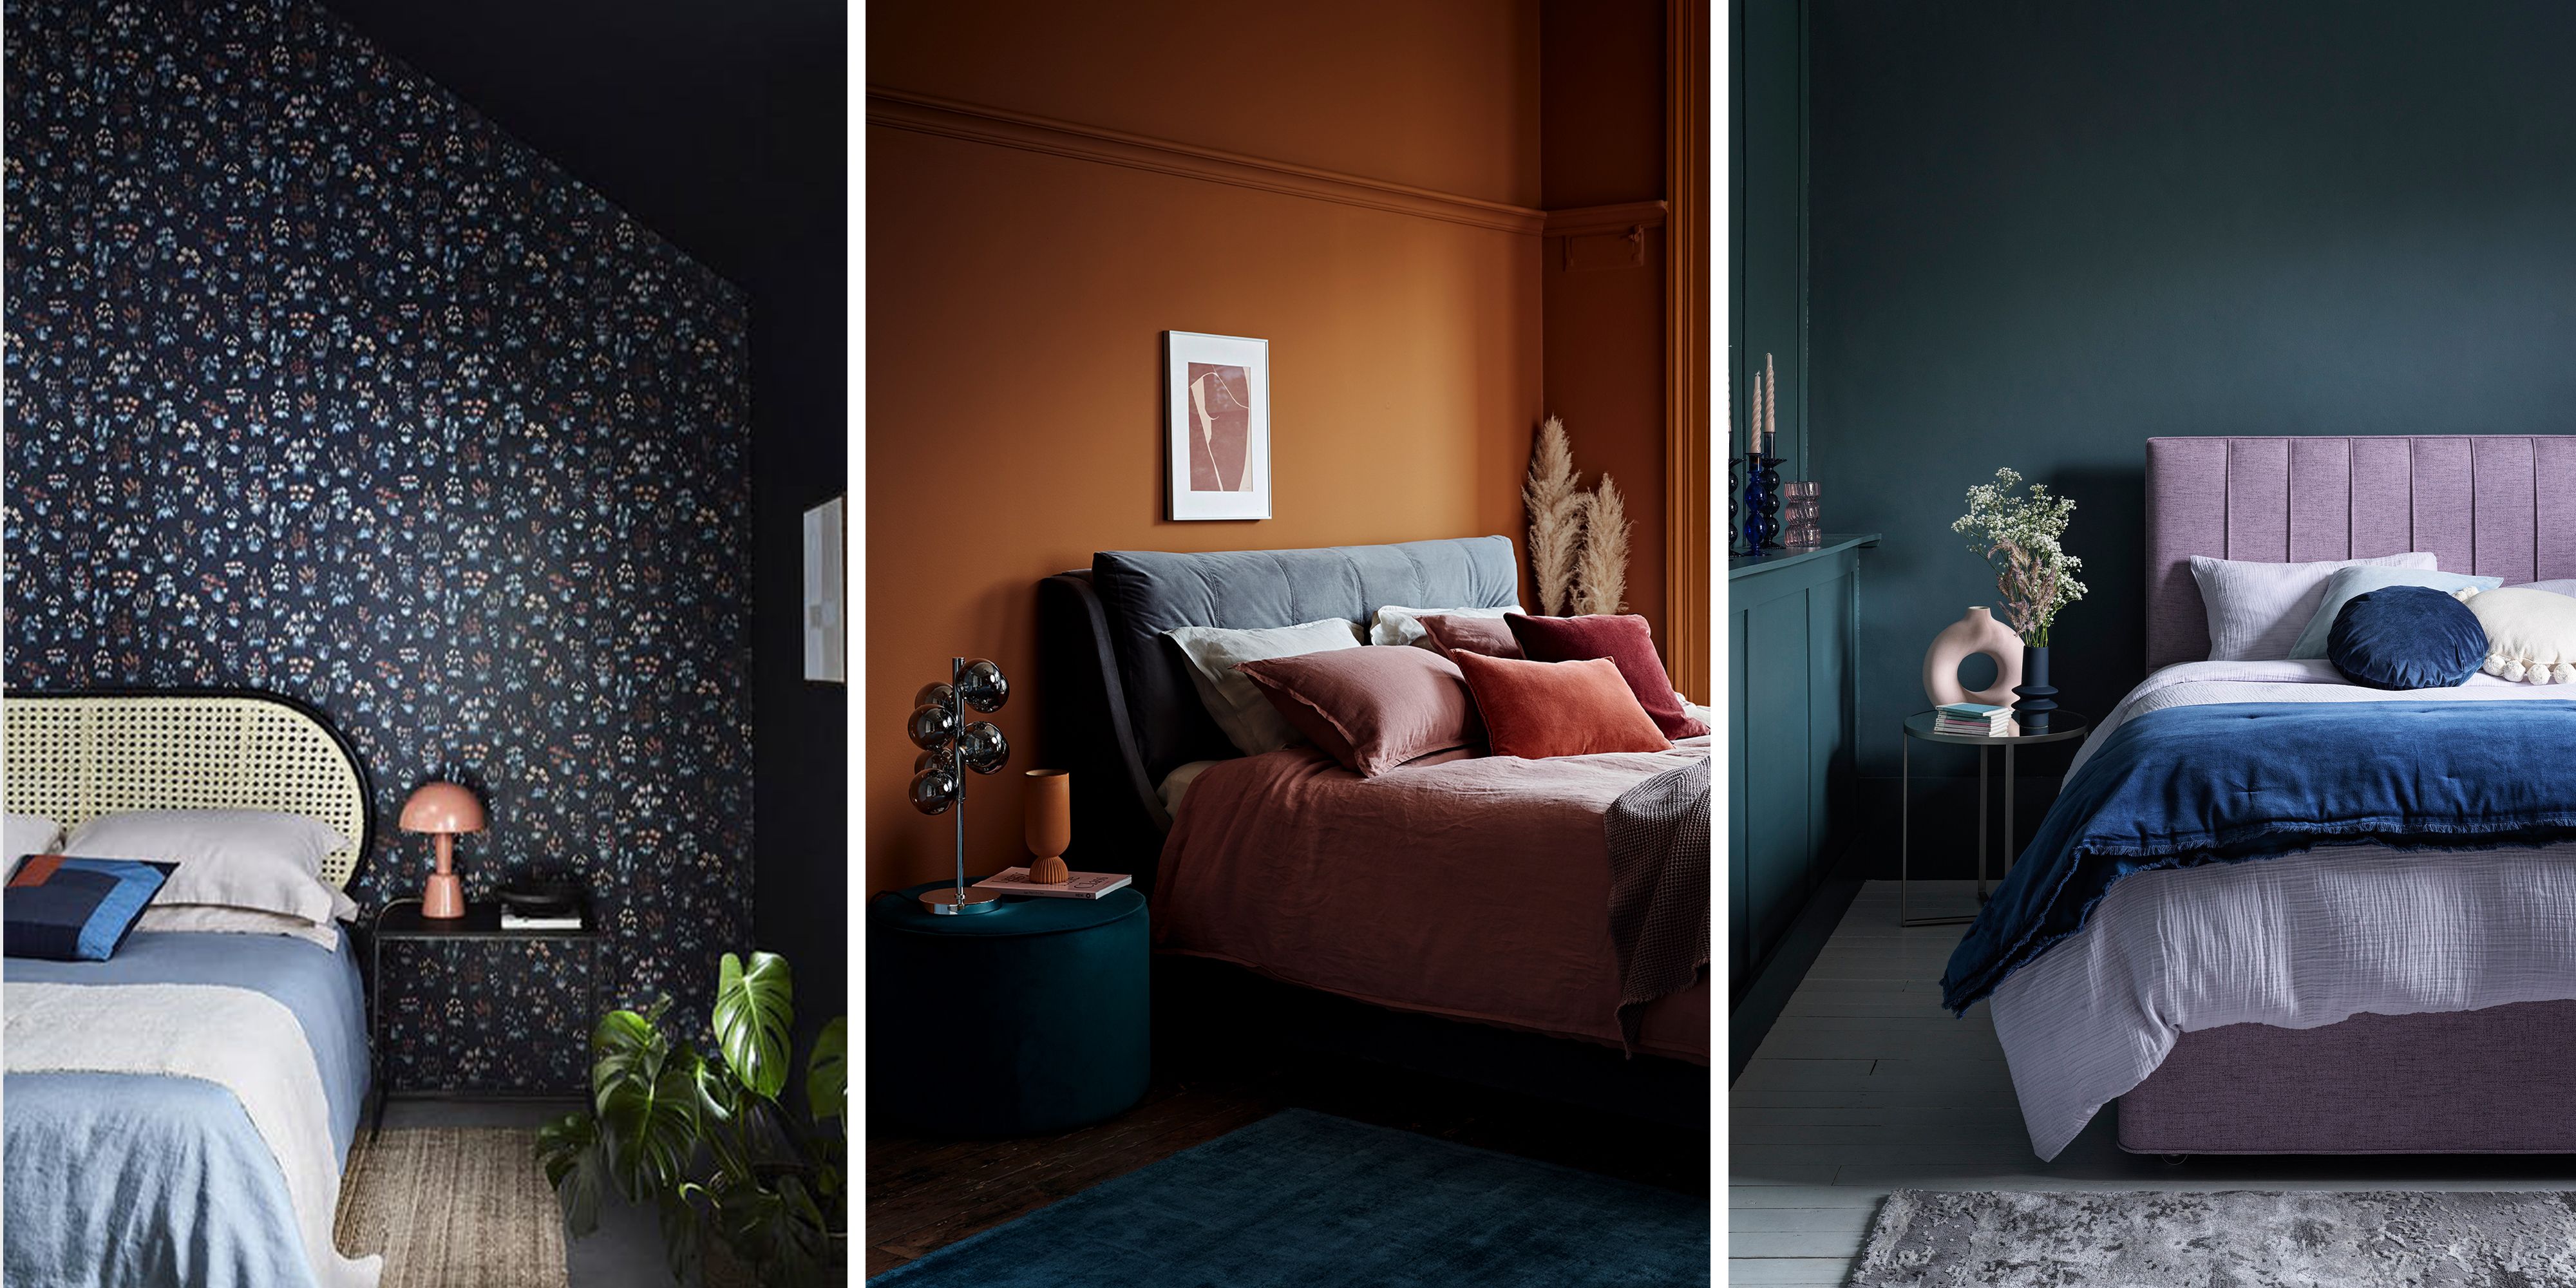 Black bedroom ideas – 12 ways to bring this deep dark color into bedrooms